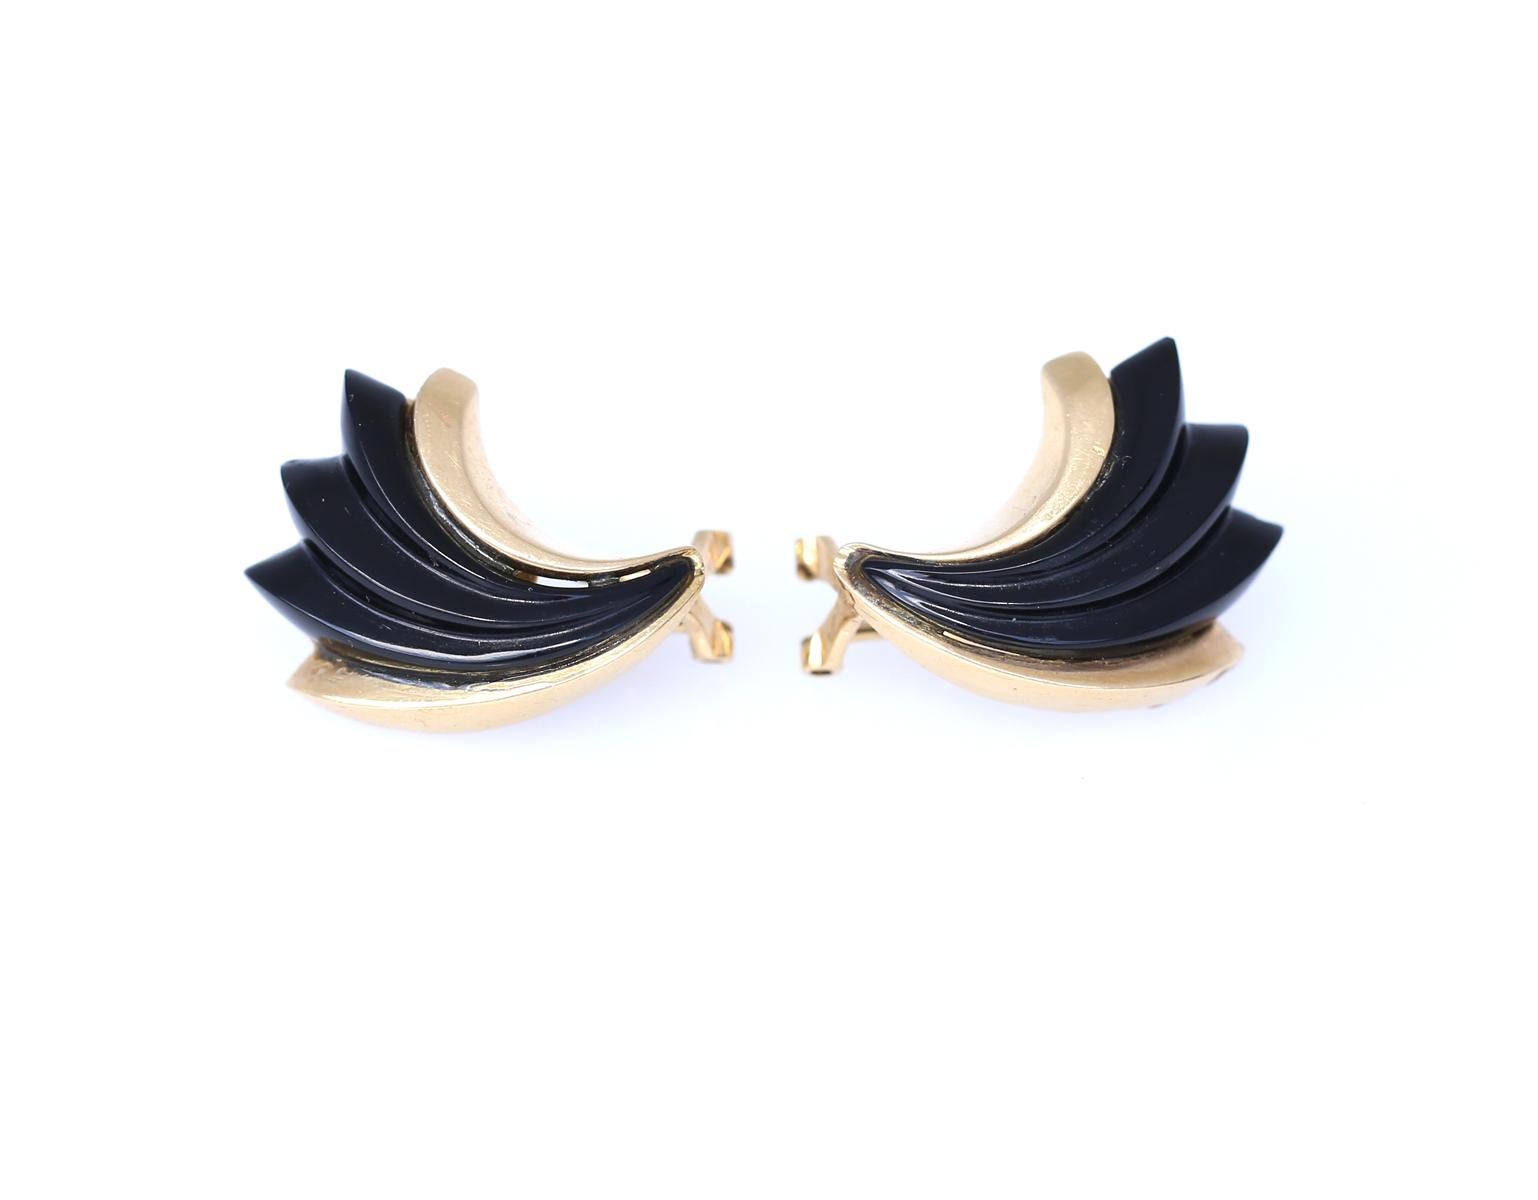 Onyx Ohrringe aus 14K Gelbgold, 1970

Onyx-Ohrringe mit 14K Gelbgold.
Super stylisch, ein echter 1970-er Stil. Schickes Design, das sowohl zur Disco-Nacht, zum Party-Abend oder einfach nur zum Freizeitausflug passt. 70-er Jahre sind wieder in Mode